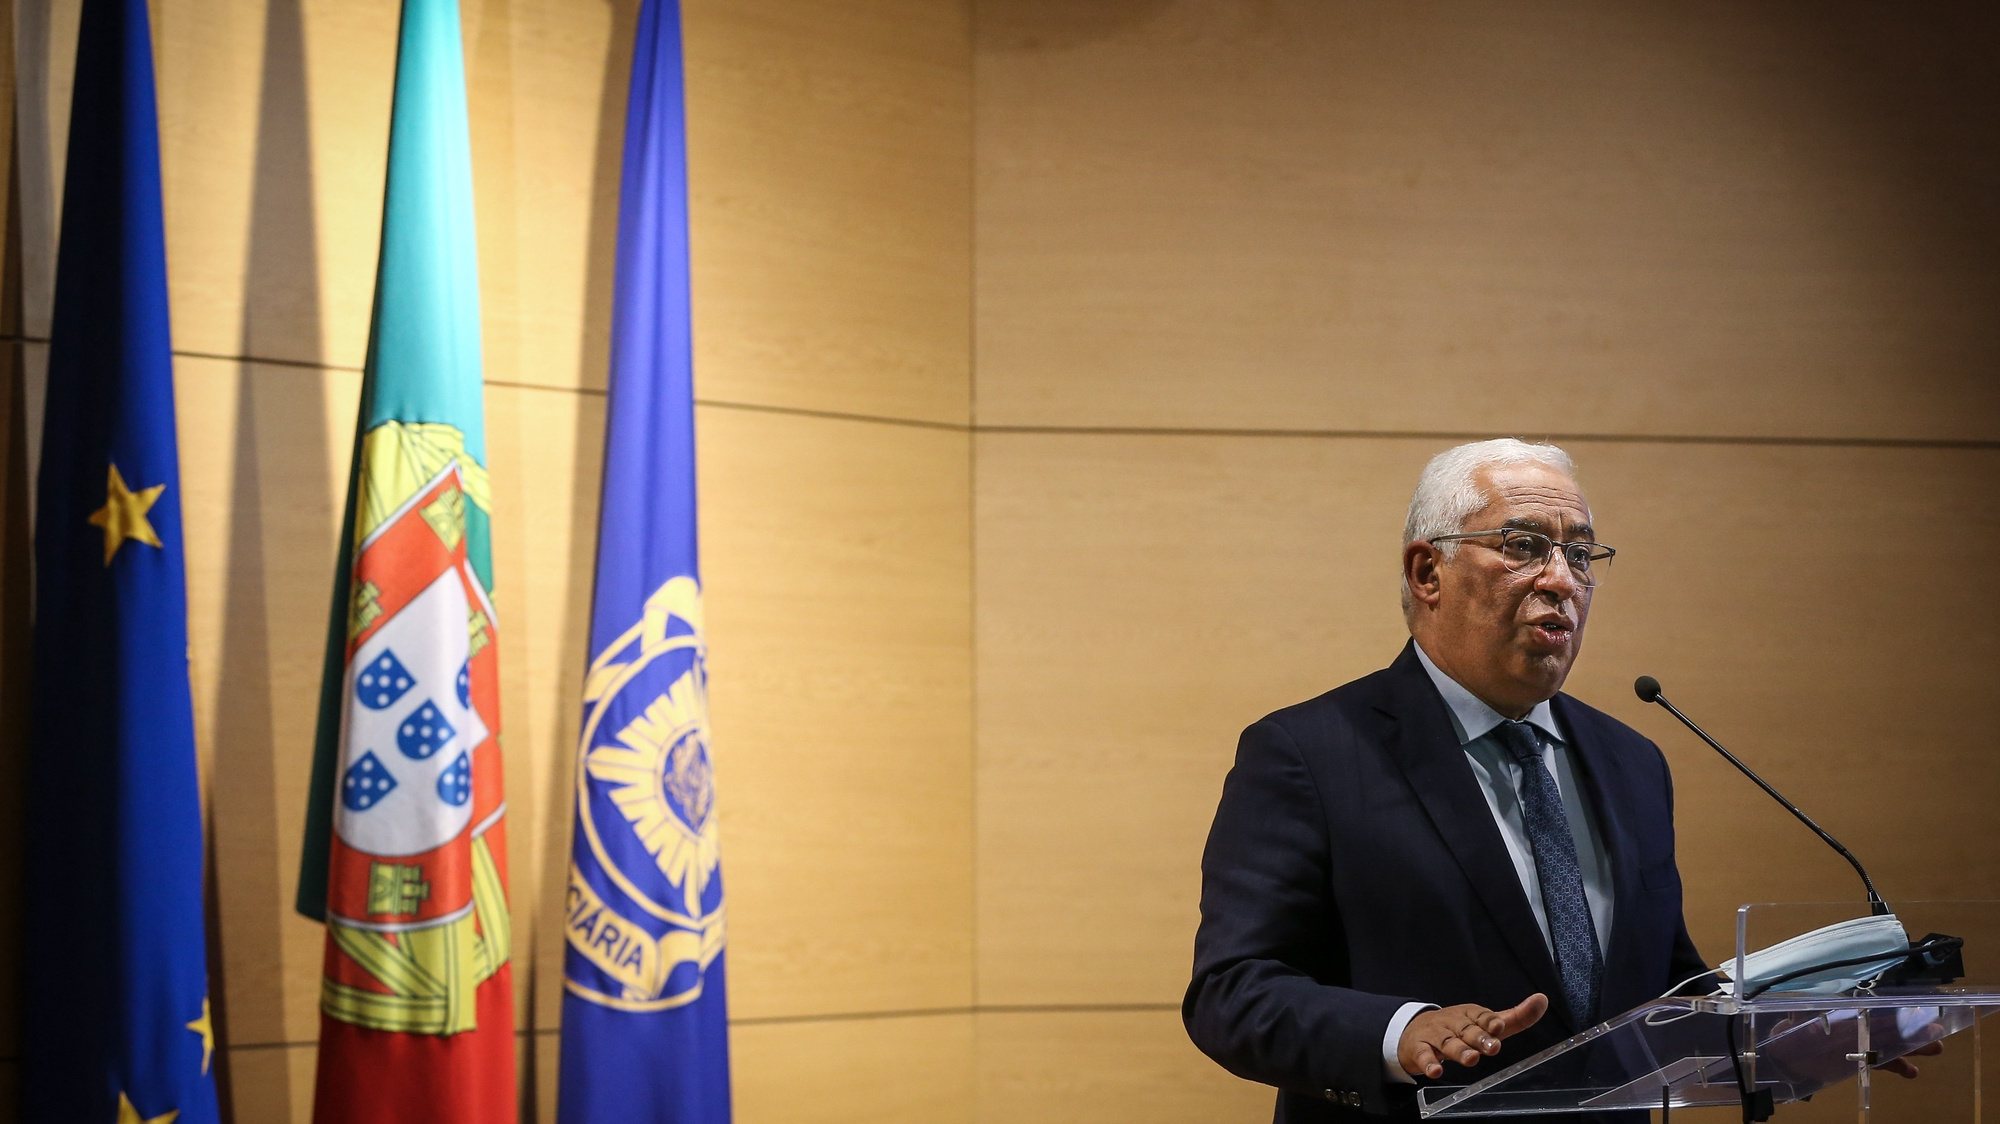 O primeiro-ministro, António Costa, discursa durante a cerimonia de celebração do Dia Internacional Contra a Corrupção nas instalações da Polícia Judiciária de Lisboa, 09 de dezembro de 2021. RODRIGO ANTUNES/LUSA